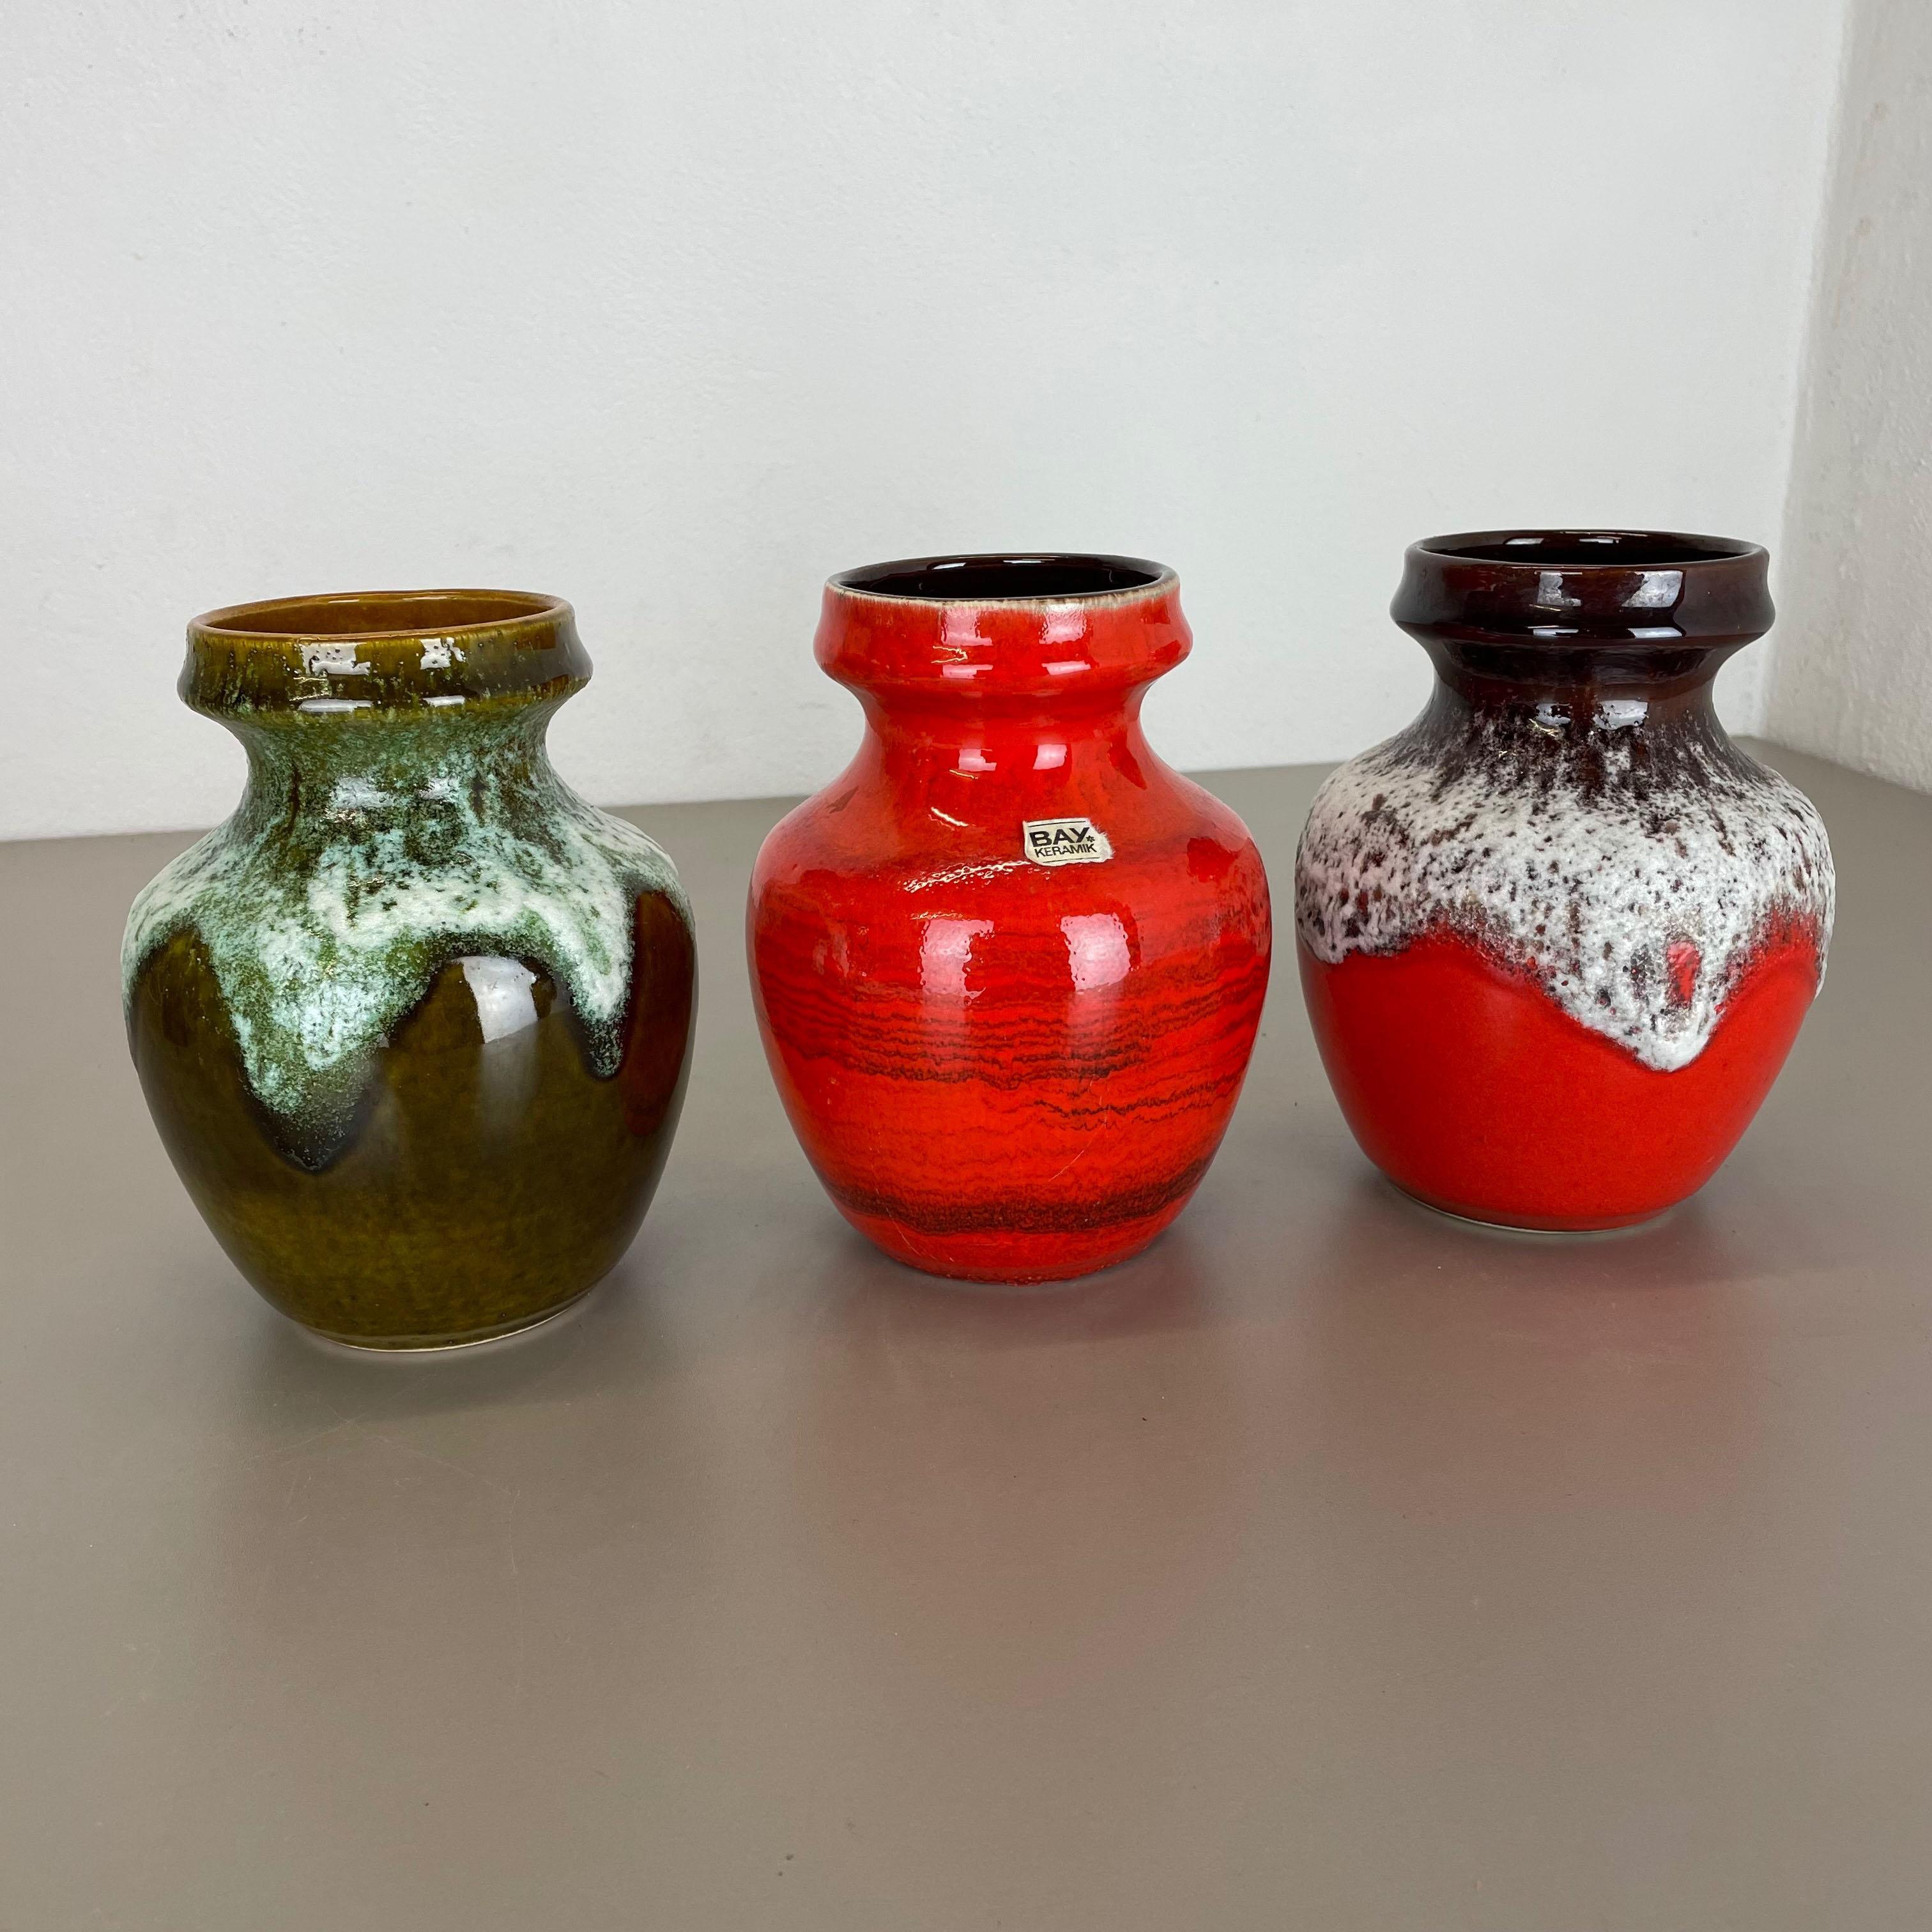 Article :

Ensemble de 3 vases en céramique


Producteur :

BAY Ceramic, Allemagne


Décennie :

1970s



Description :

Ensemble de 3 vases originaux en céramique des années 1960, fabriqués en Allemagne. Production allemande de